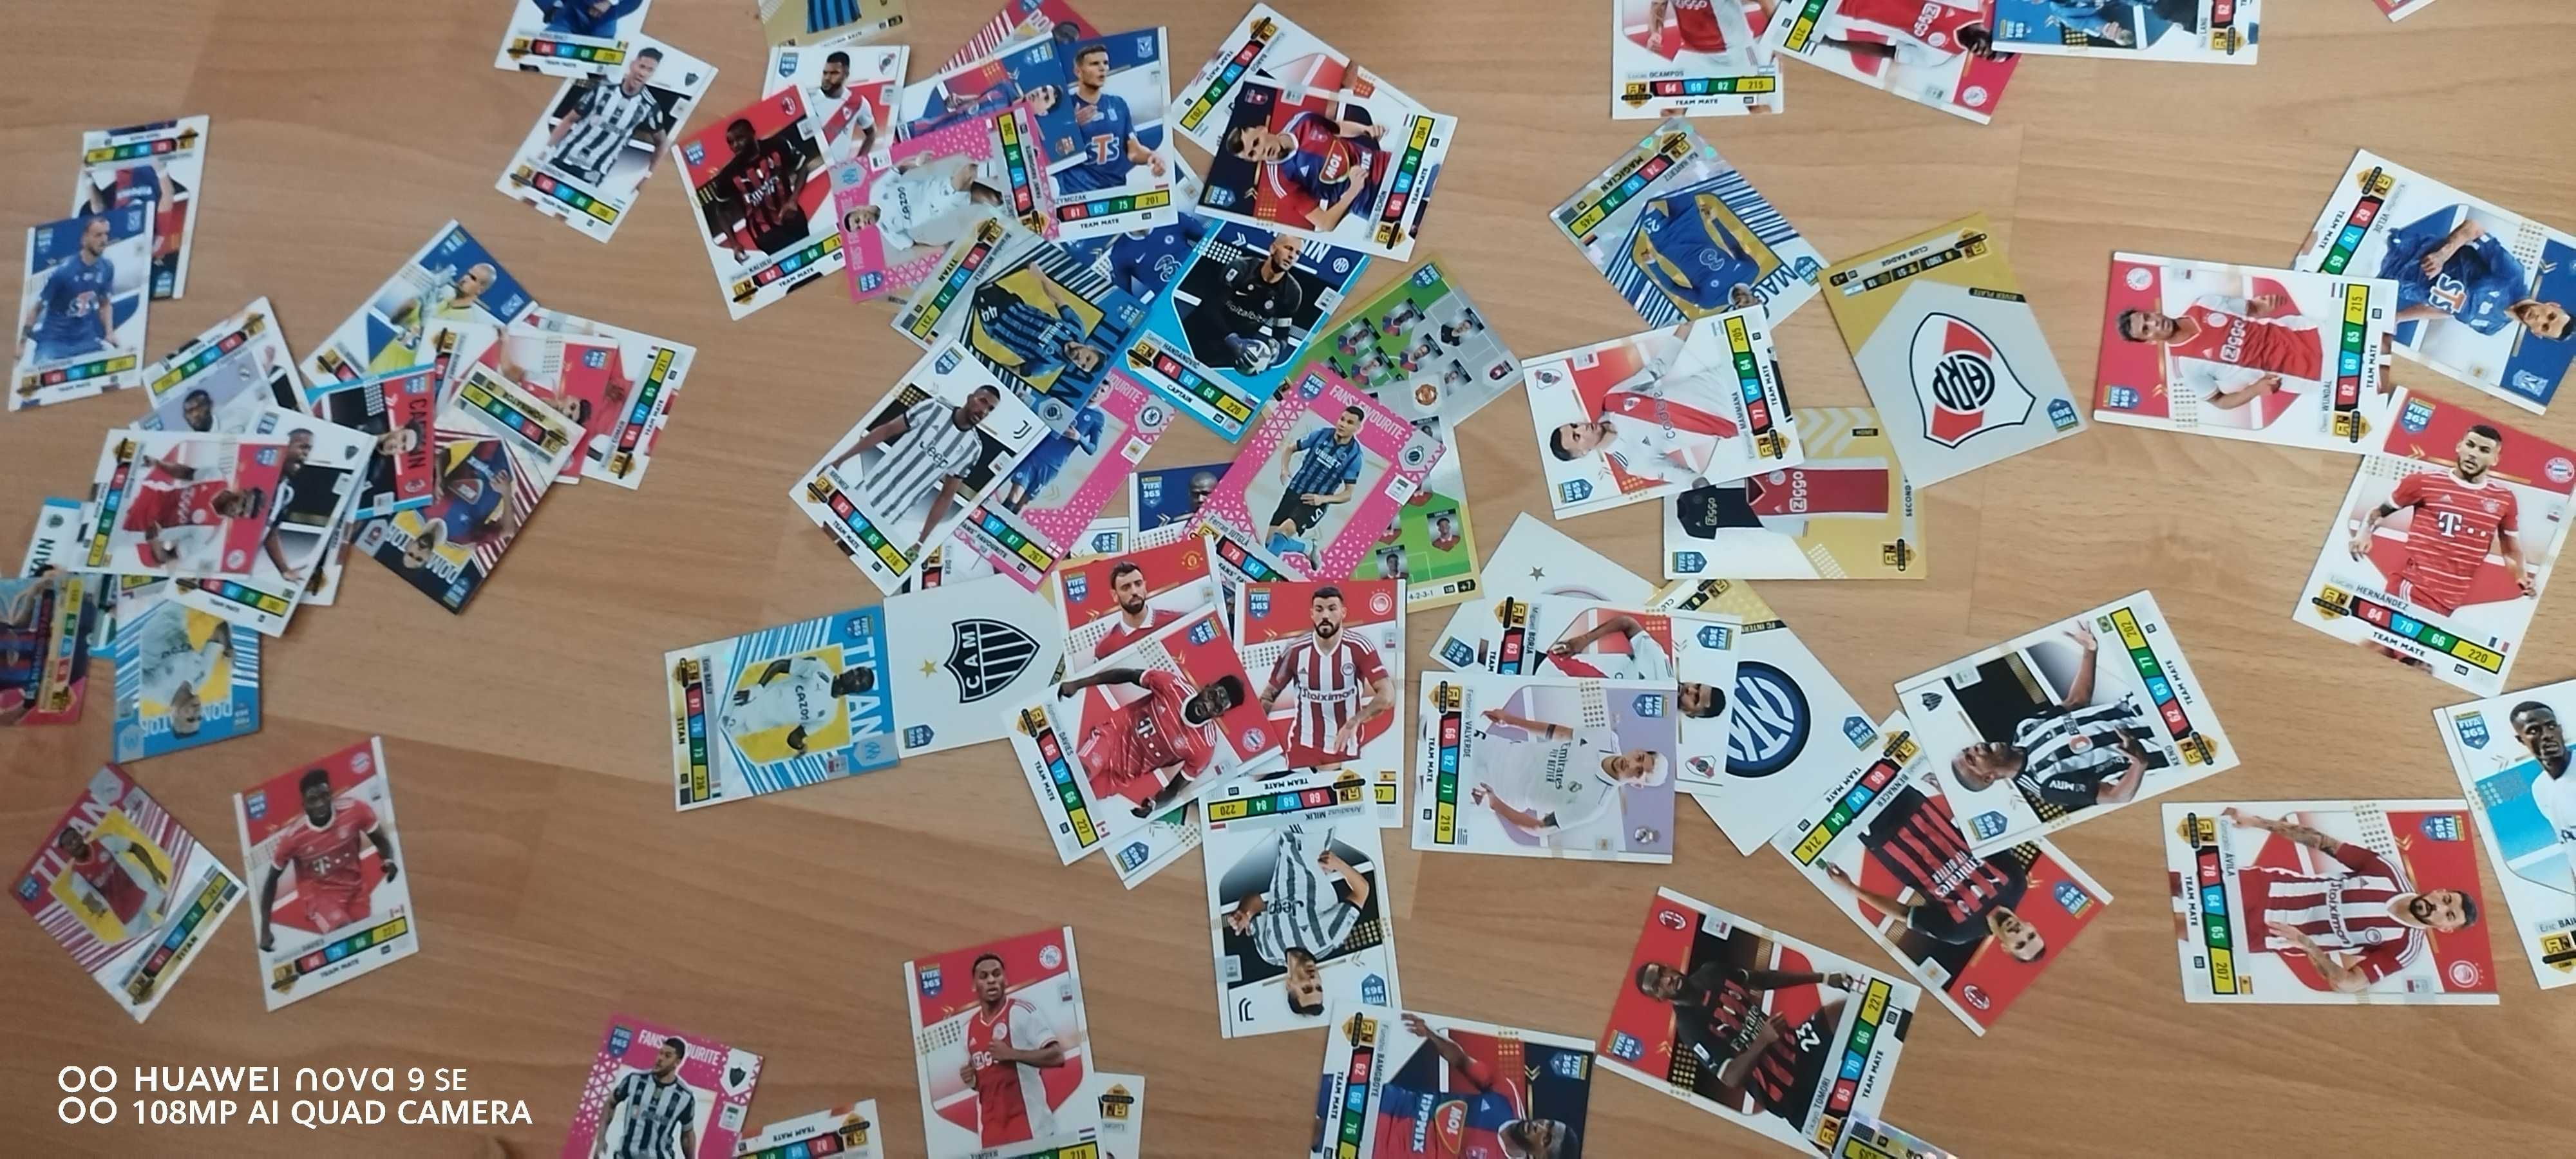 Cartonașe FIFA și Panini cu fotbaliști